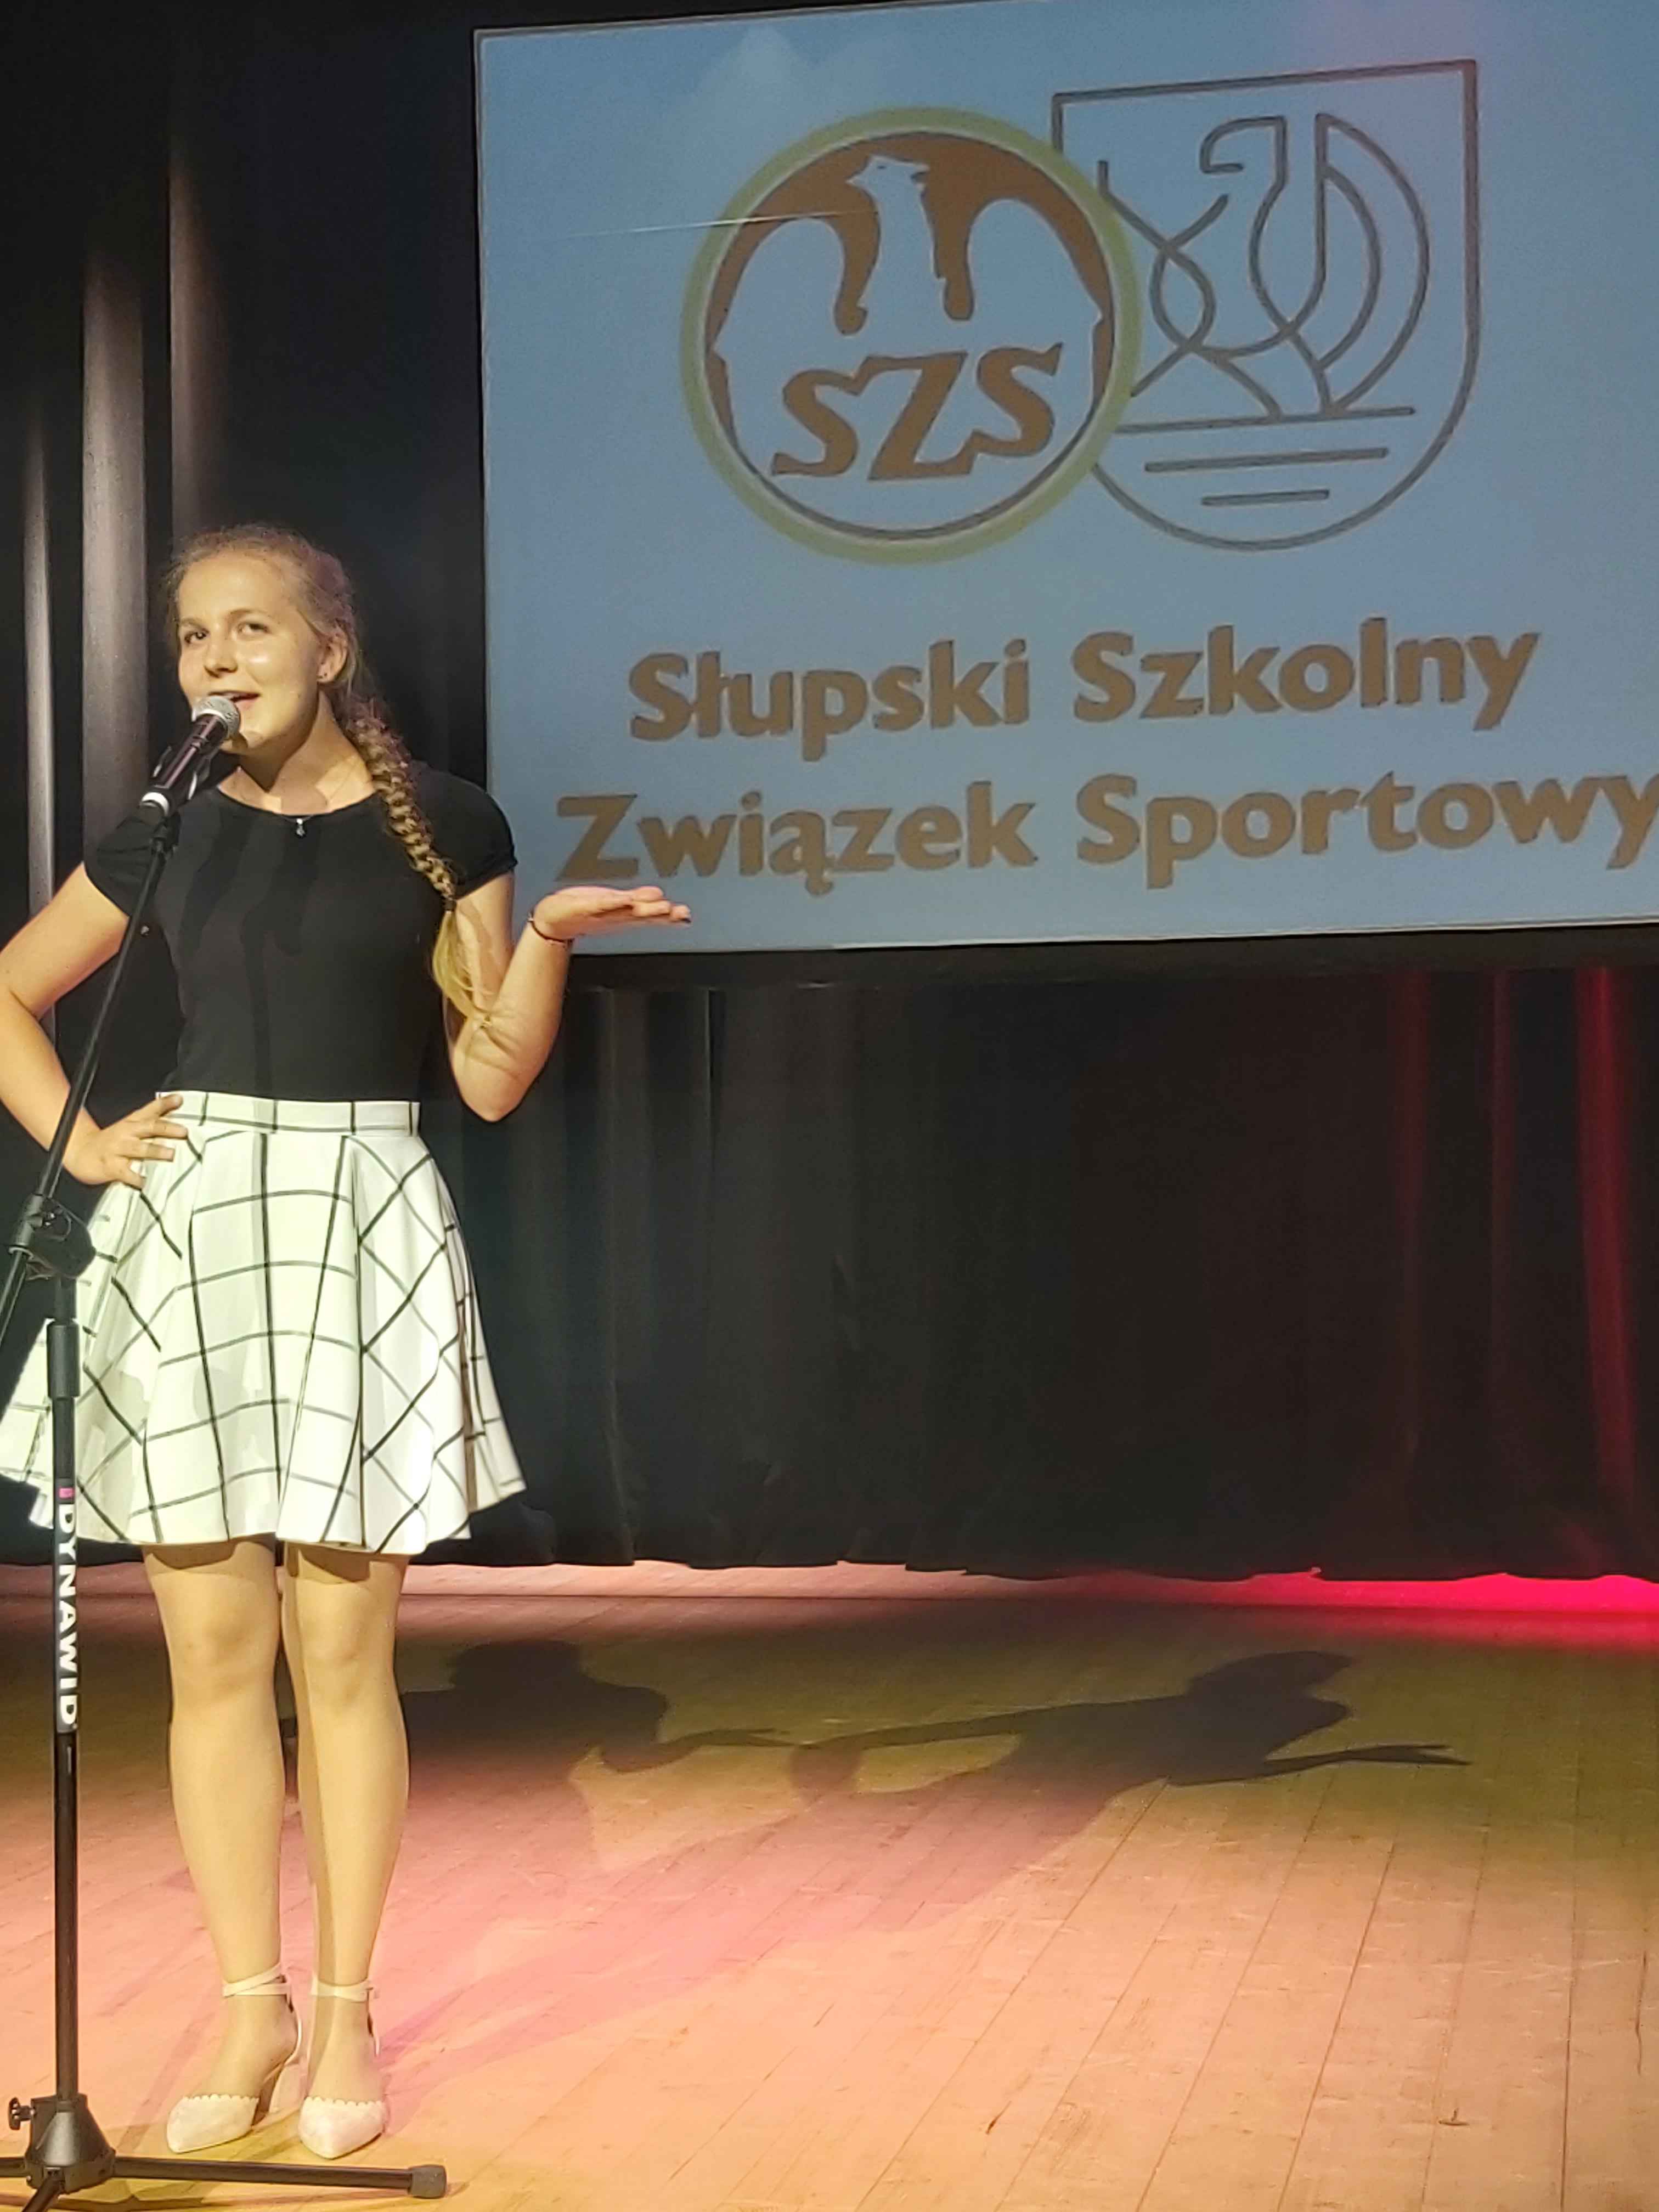 Dziewczyna śpiewa piosenkę stojąc na scenie , w tle wyświetlony napis  Słupski Szkolny Związek Sportowy, na podłodze cień artystki